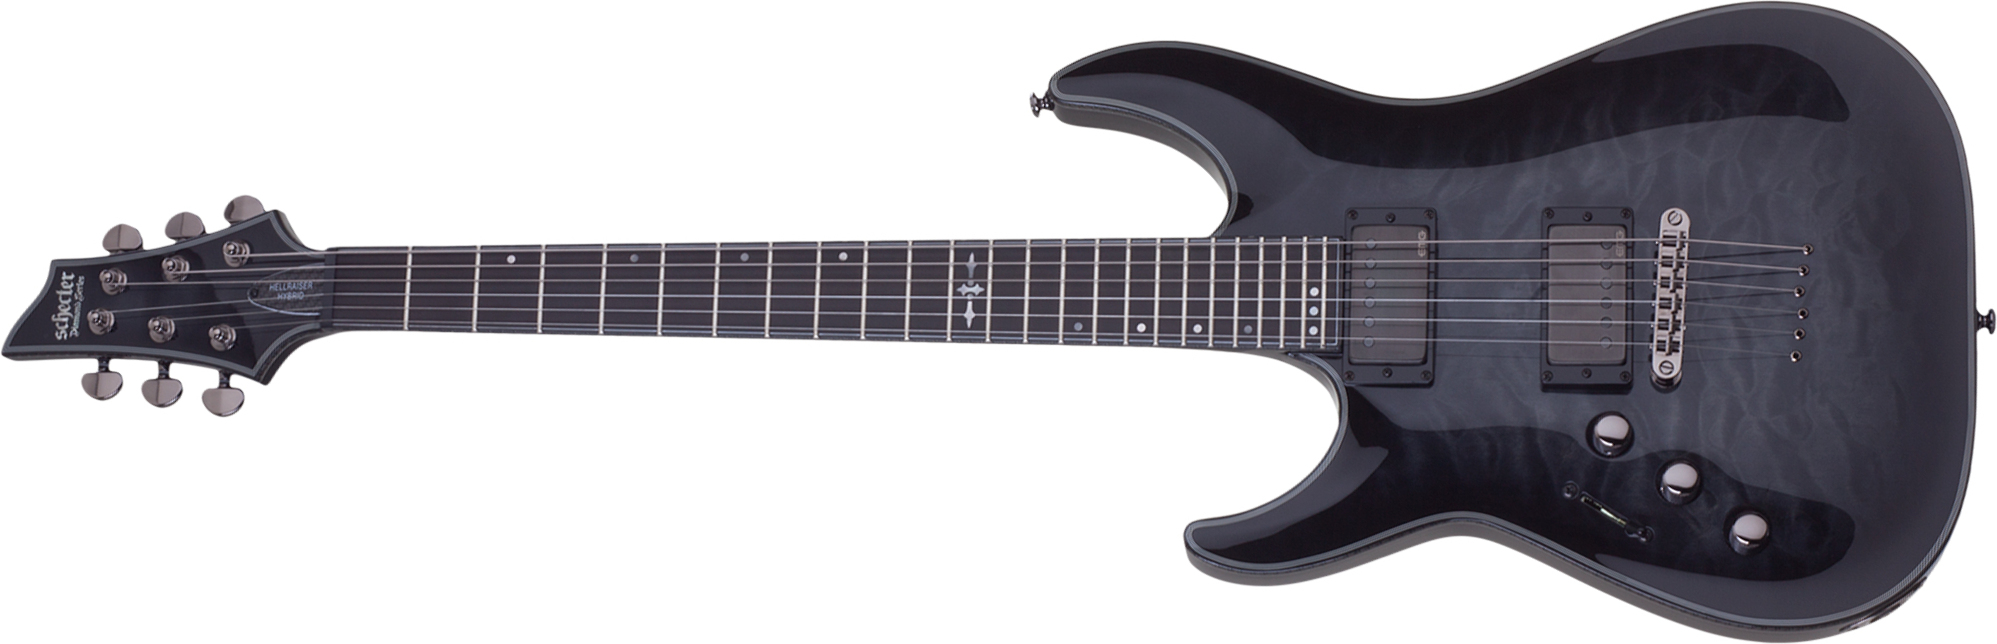 Schecter C-1 Hellraiser Hybrid Lh Gaucher 2h Emg Ht Eb - Trans. Black Burst - Linkshandige elektrische gitaar - Main picture